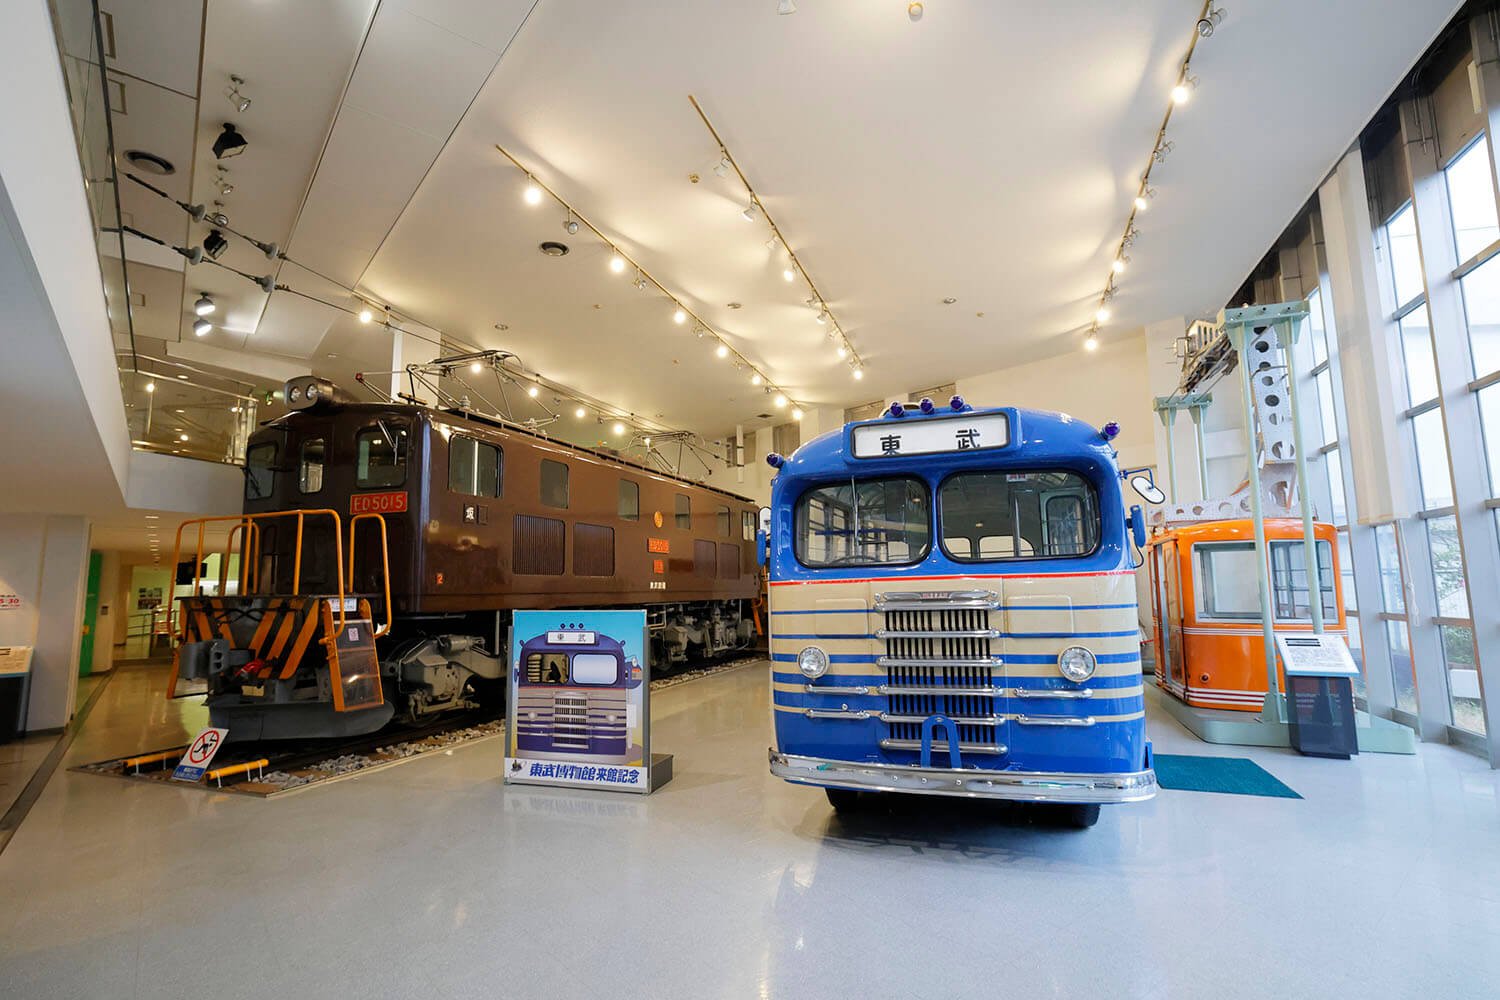 140東武博物館ED5015電気機関車とキャブオーバーバス